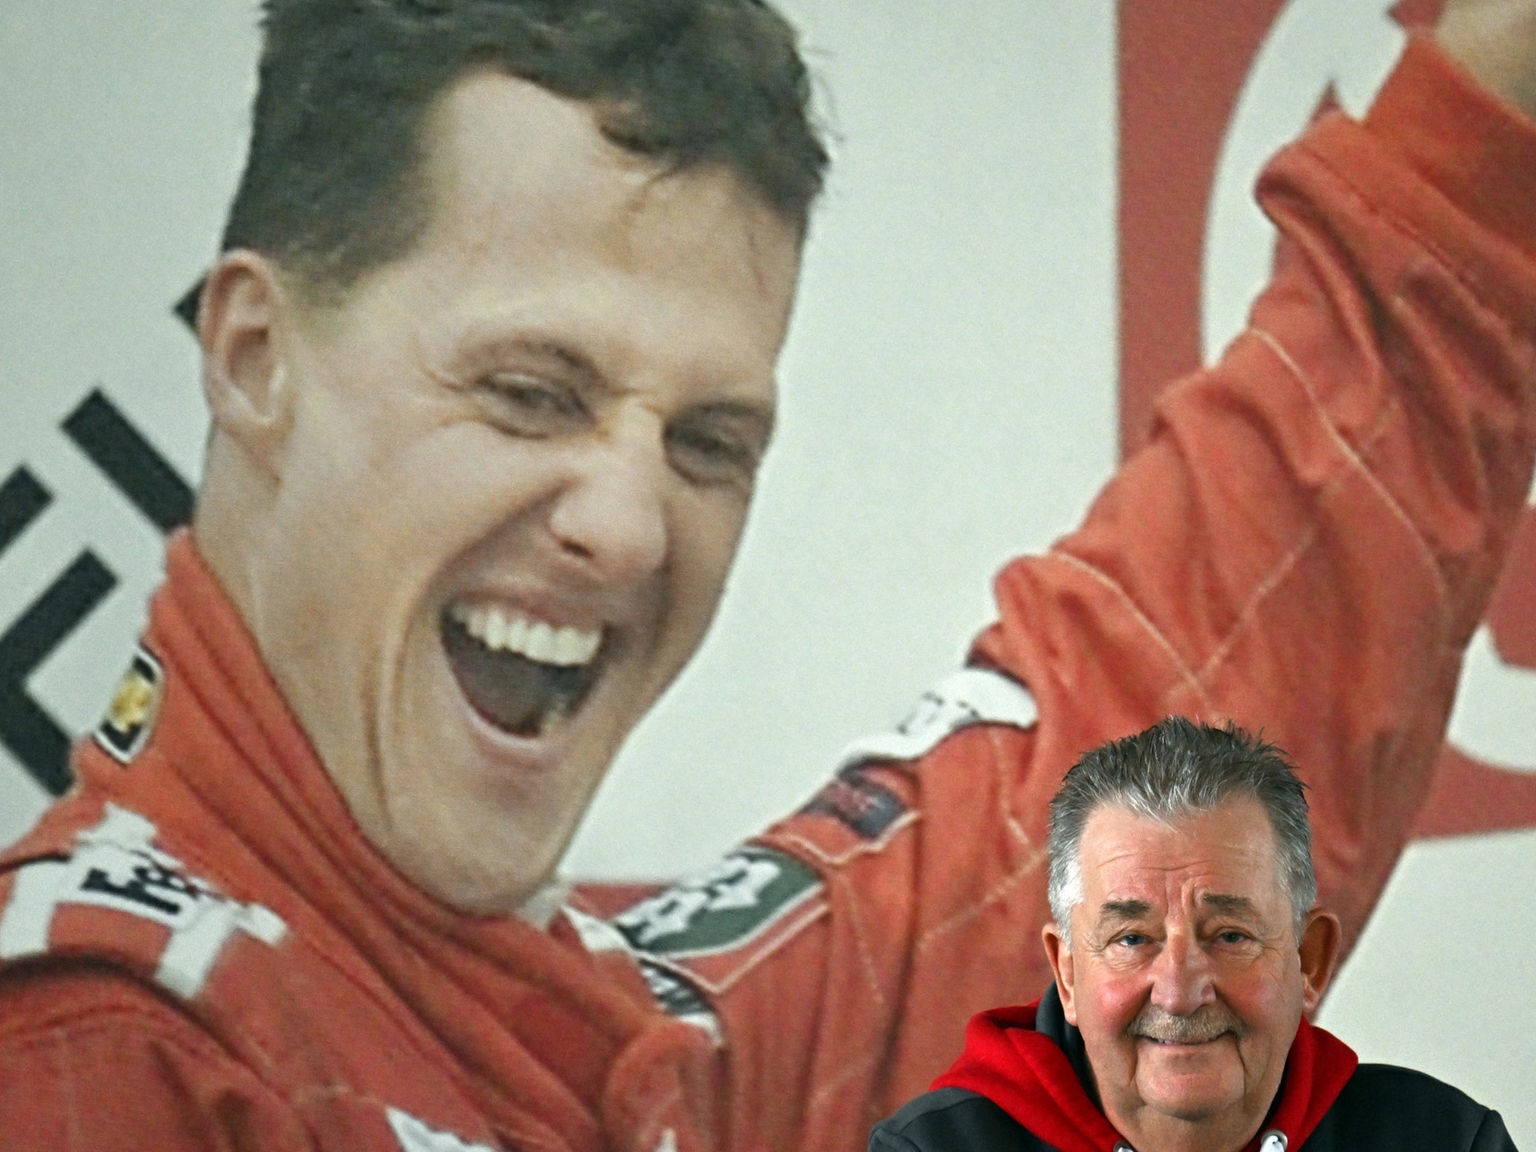 Michael Schumacher verunglückte heute vor drei Jahren - WELT